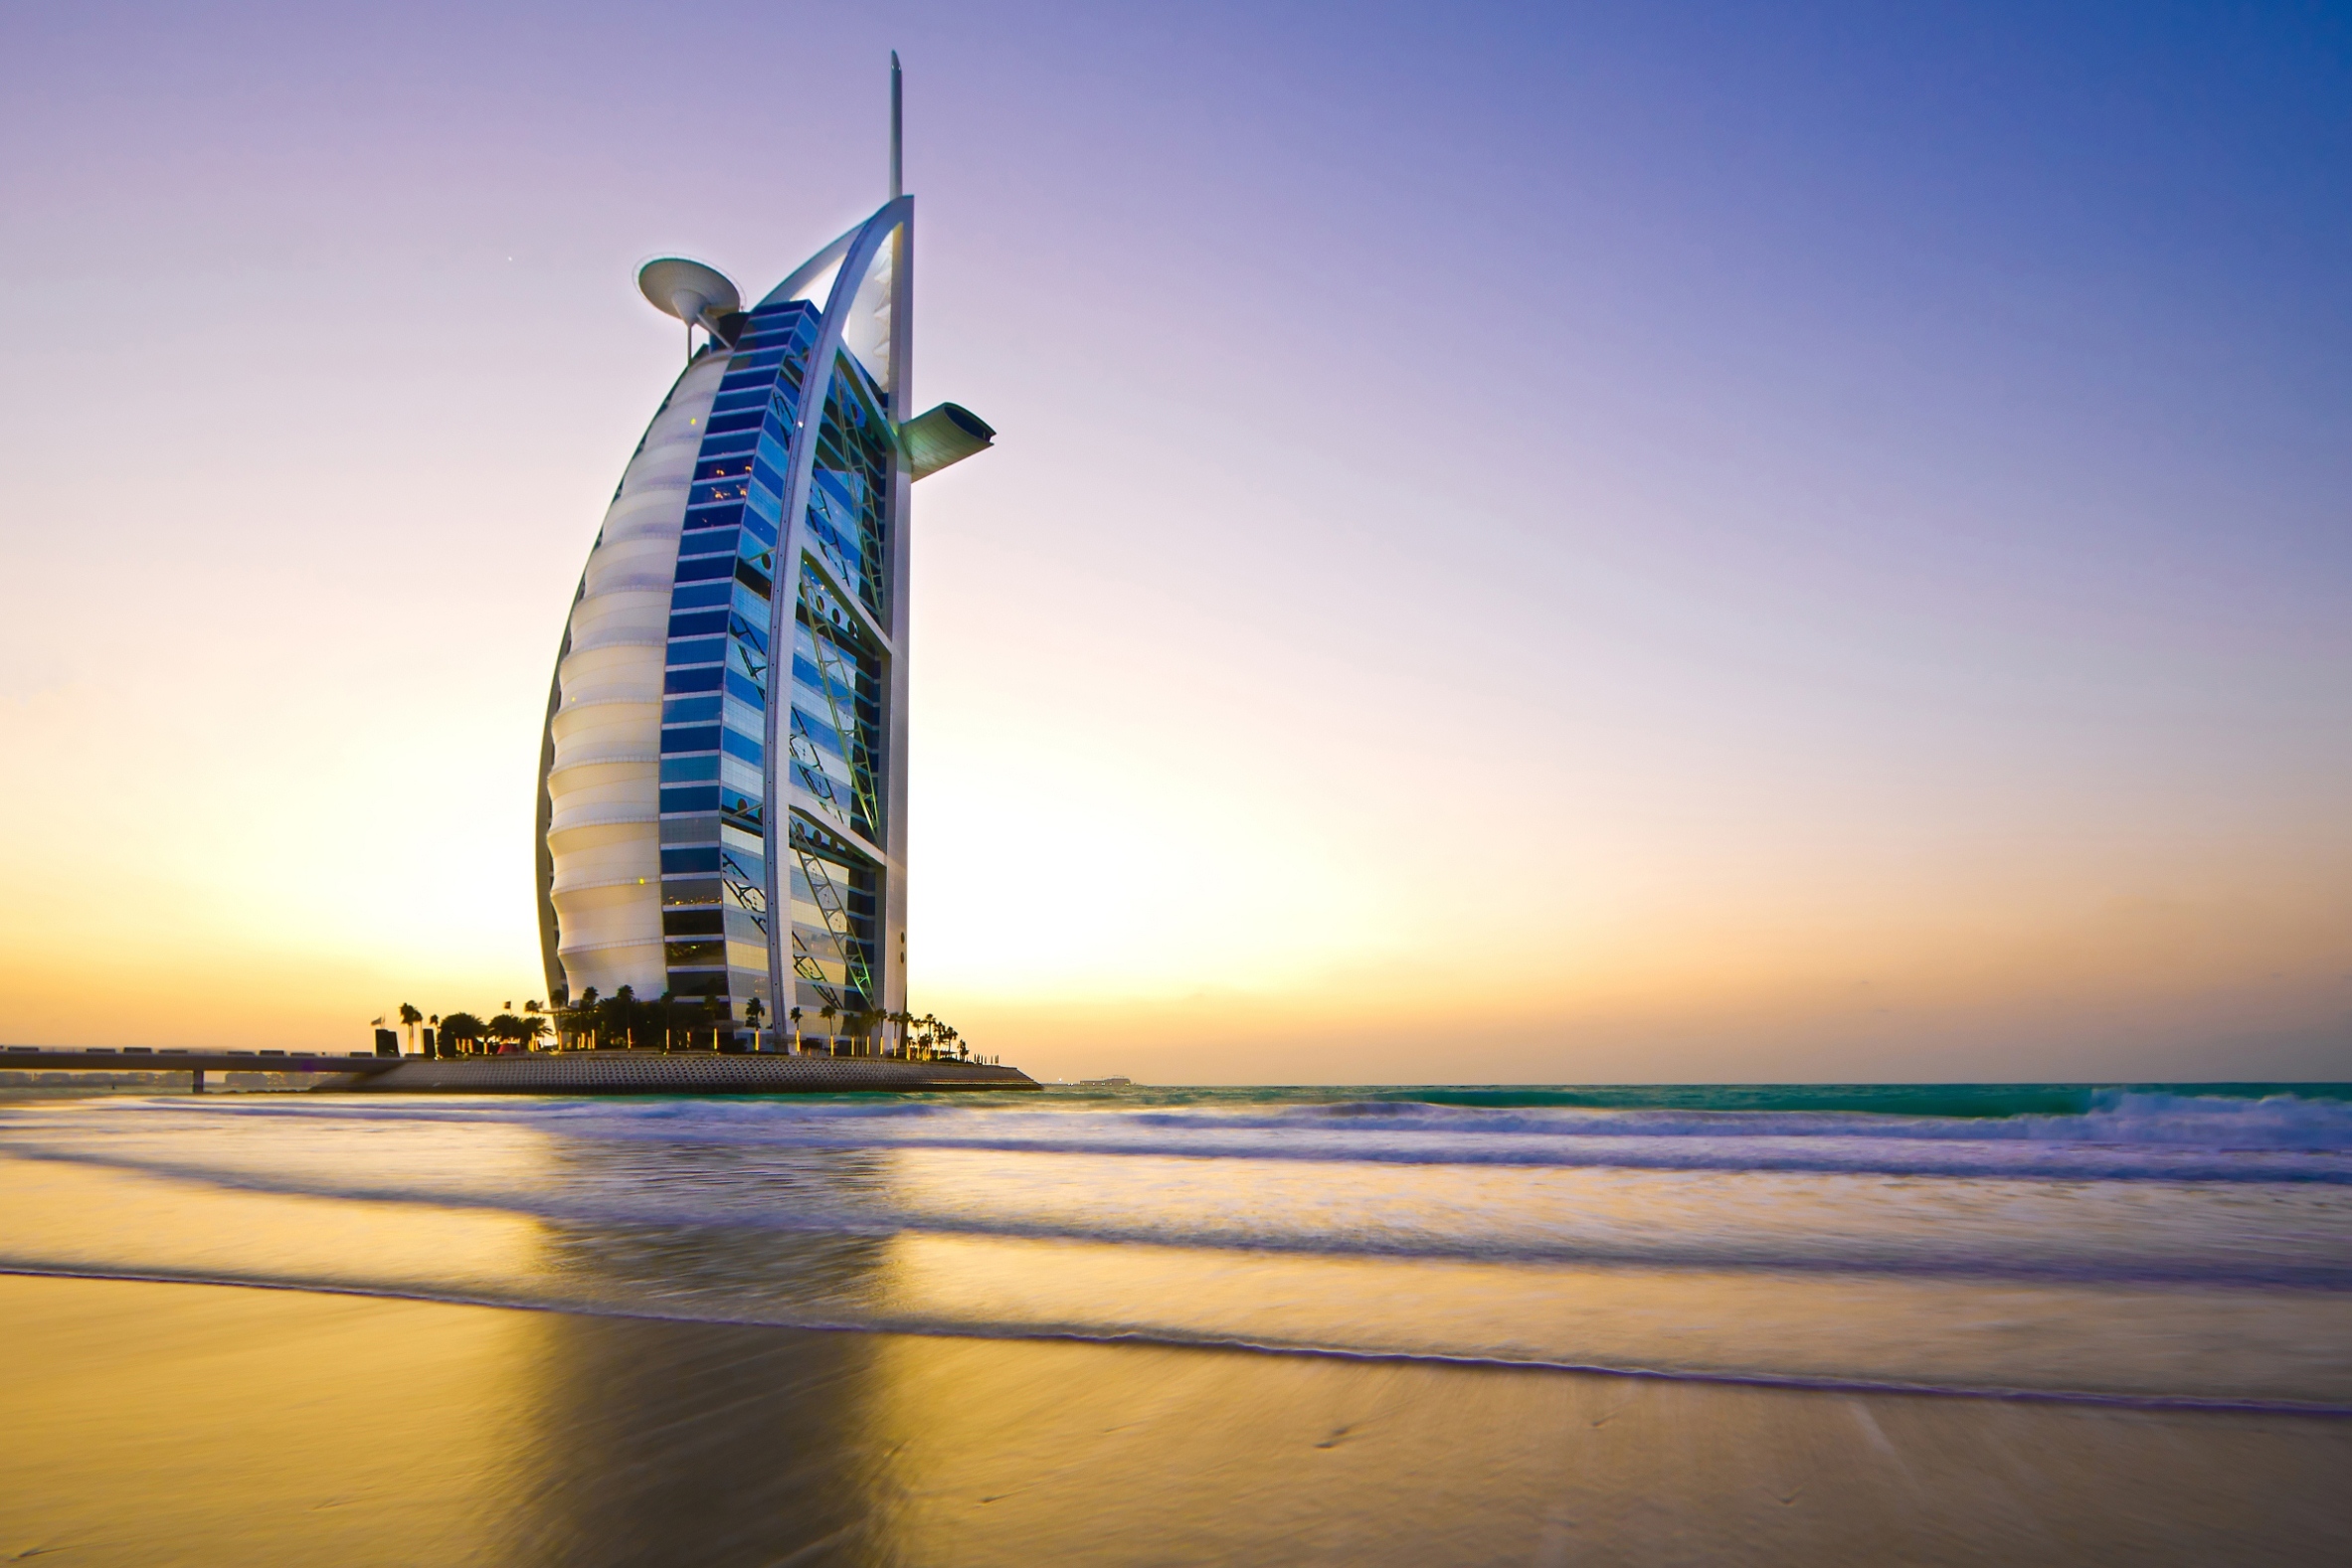 Visiting Burj Al Arab: The symbol of Dubai - Travel with Anda